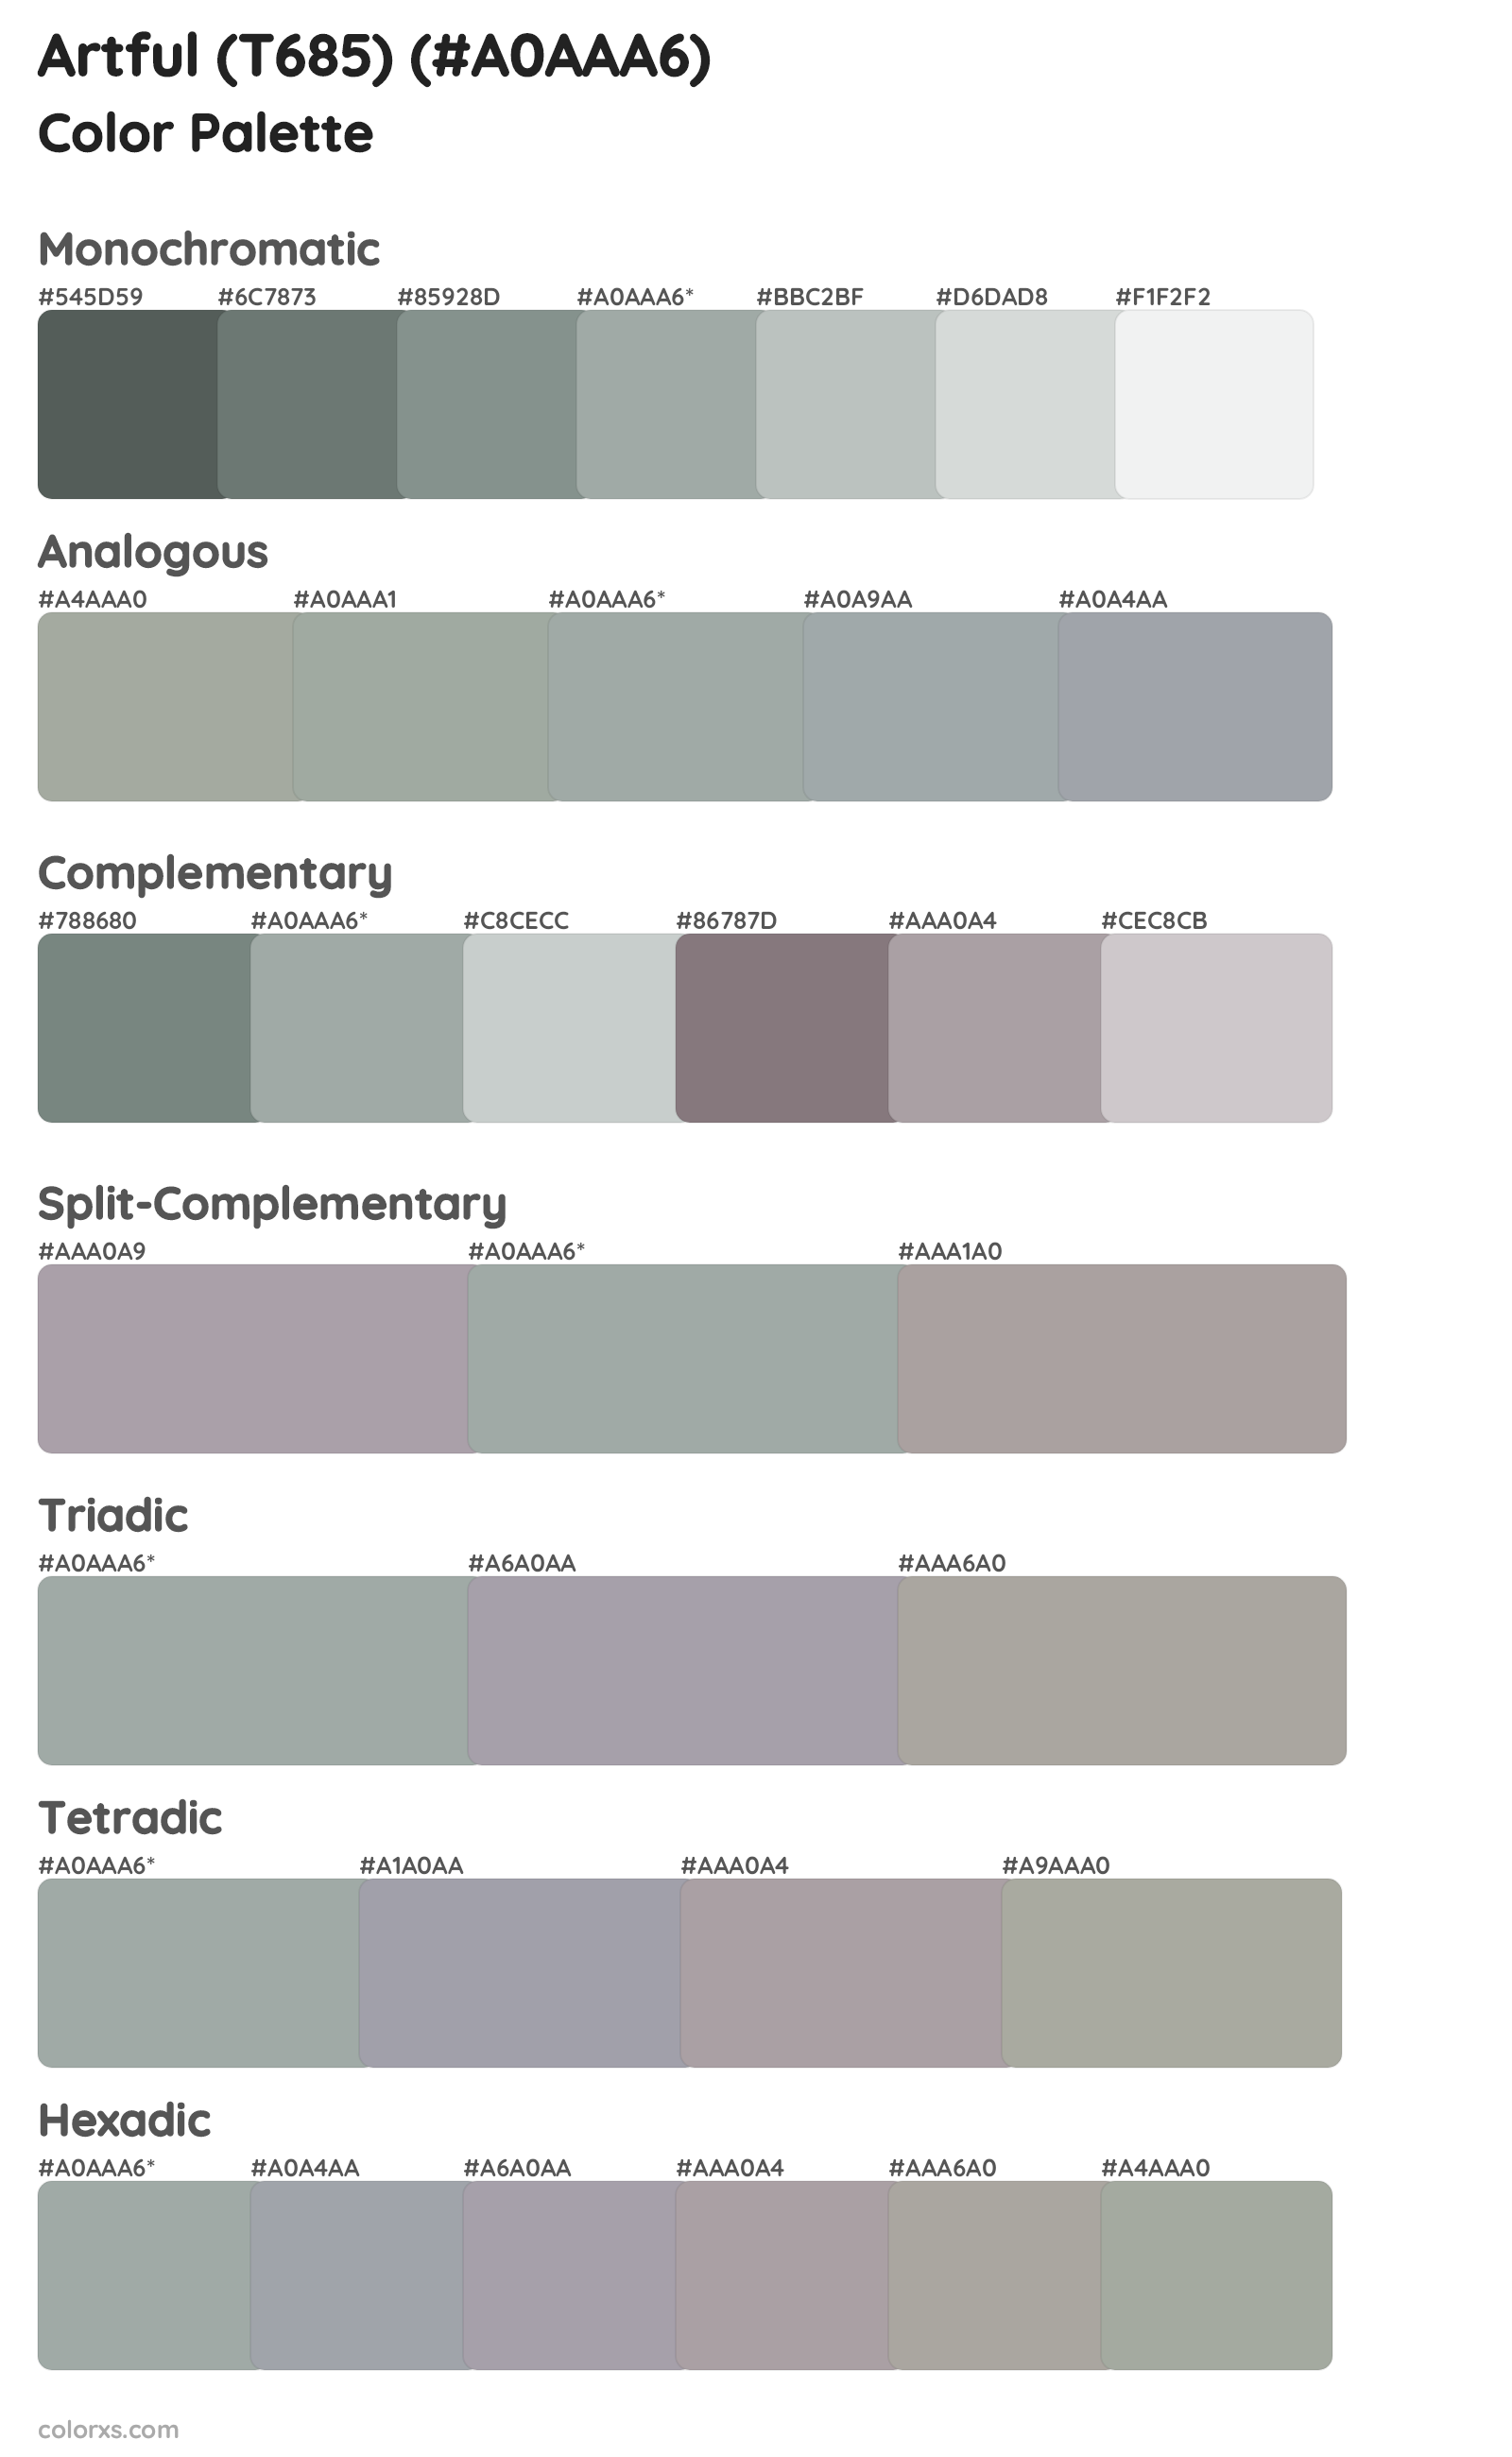 Artful (T685) Color Scheme Palettes